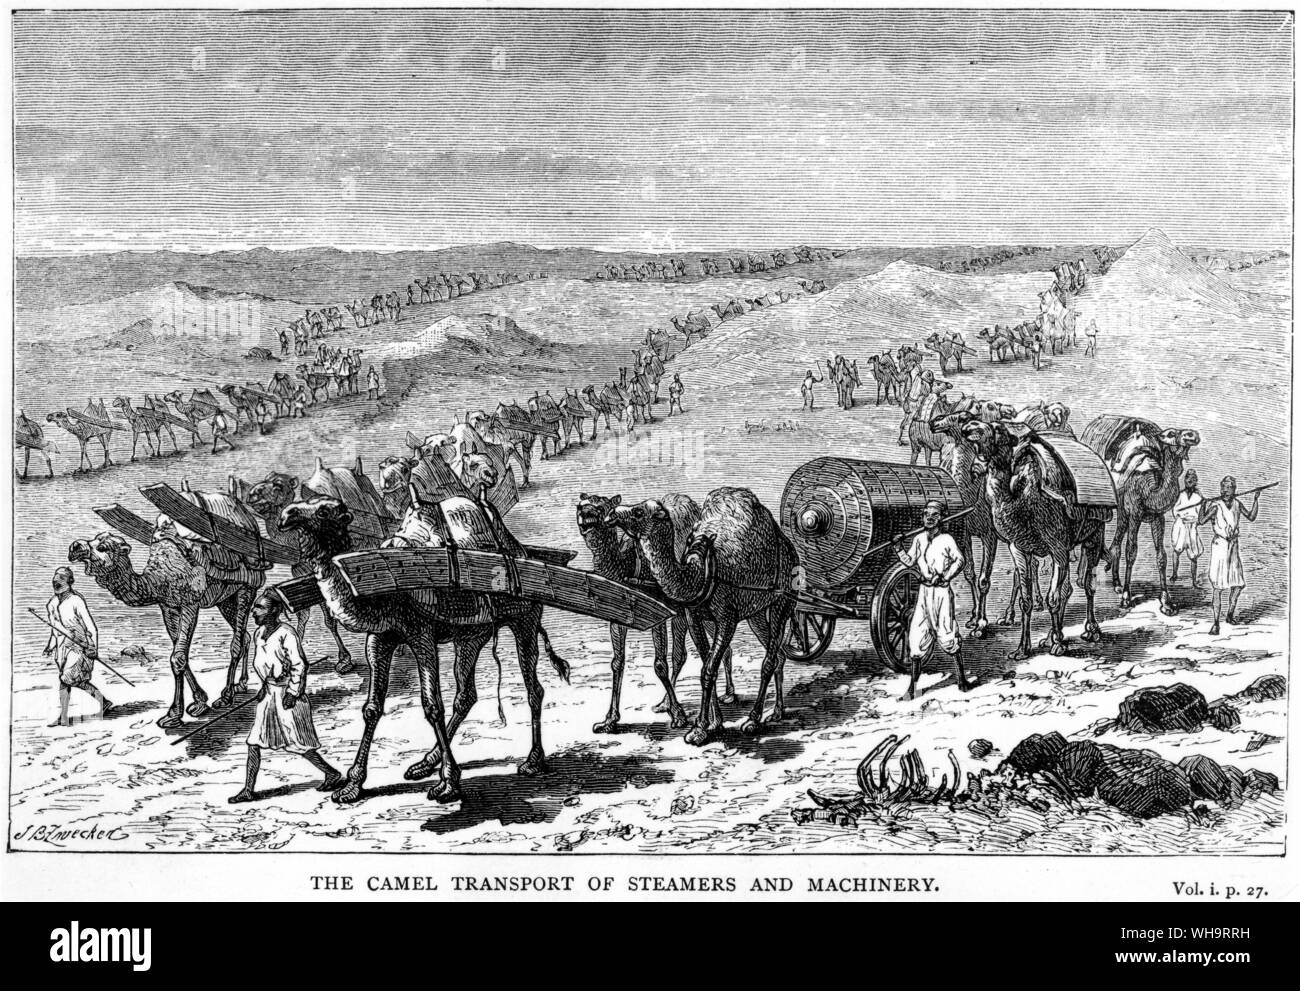 Le chameau transport de bateaux à vapeur et des machines. 1870. Début de l'expédition en Afrique centrale." Banque D'Images